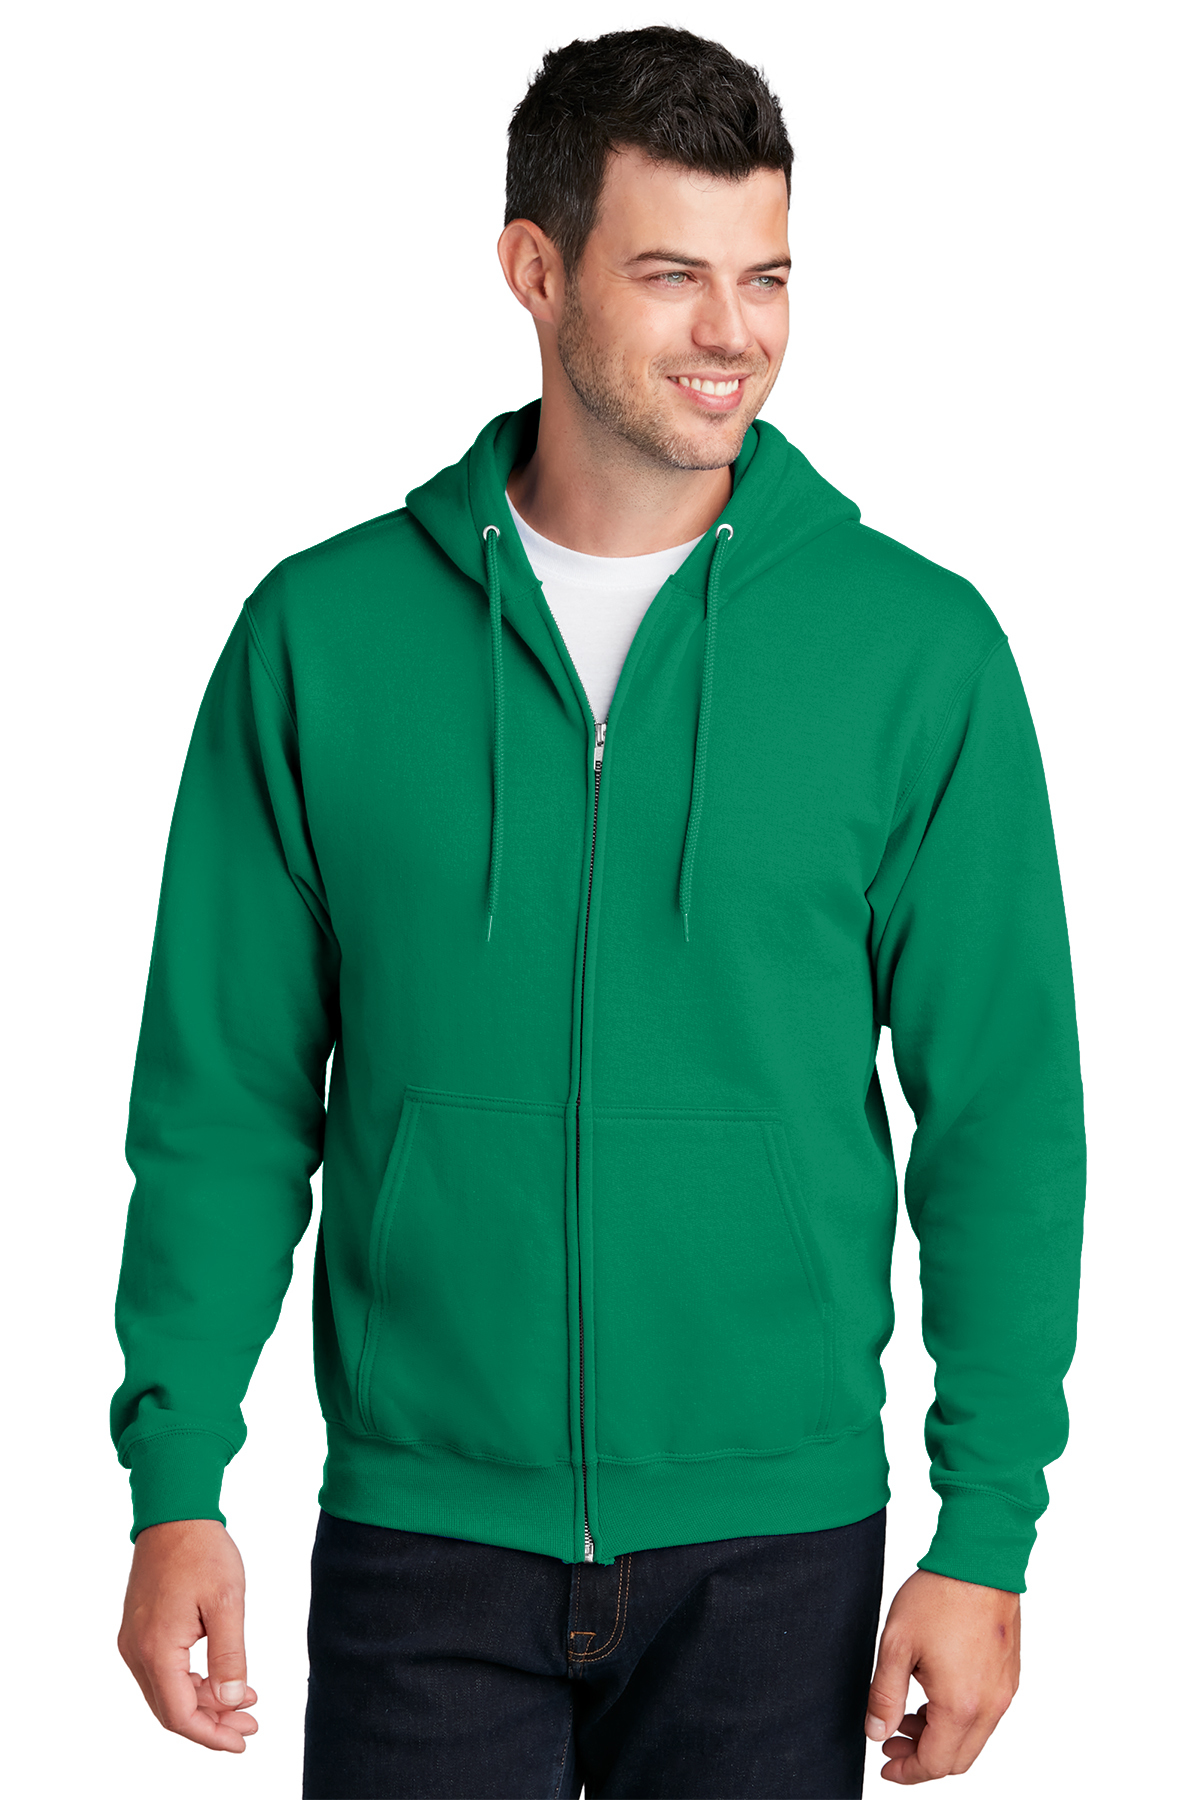 Port & Company Core Fleece Full-Zip Hooded Sweatshirt | Product ...